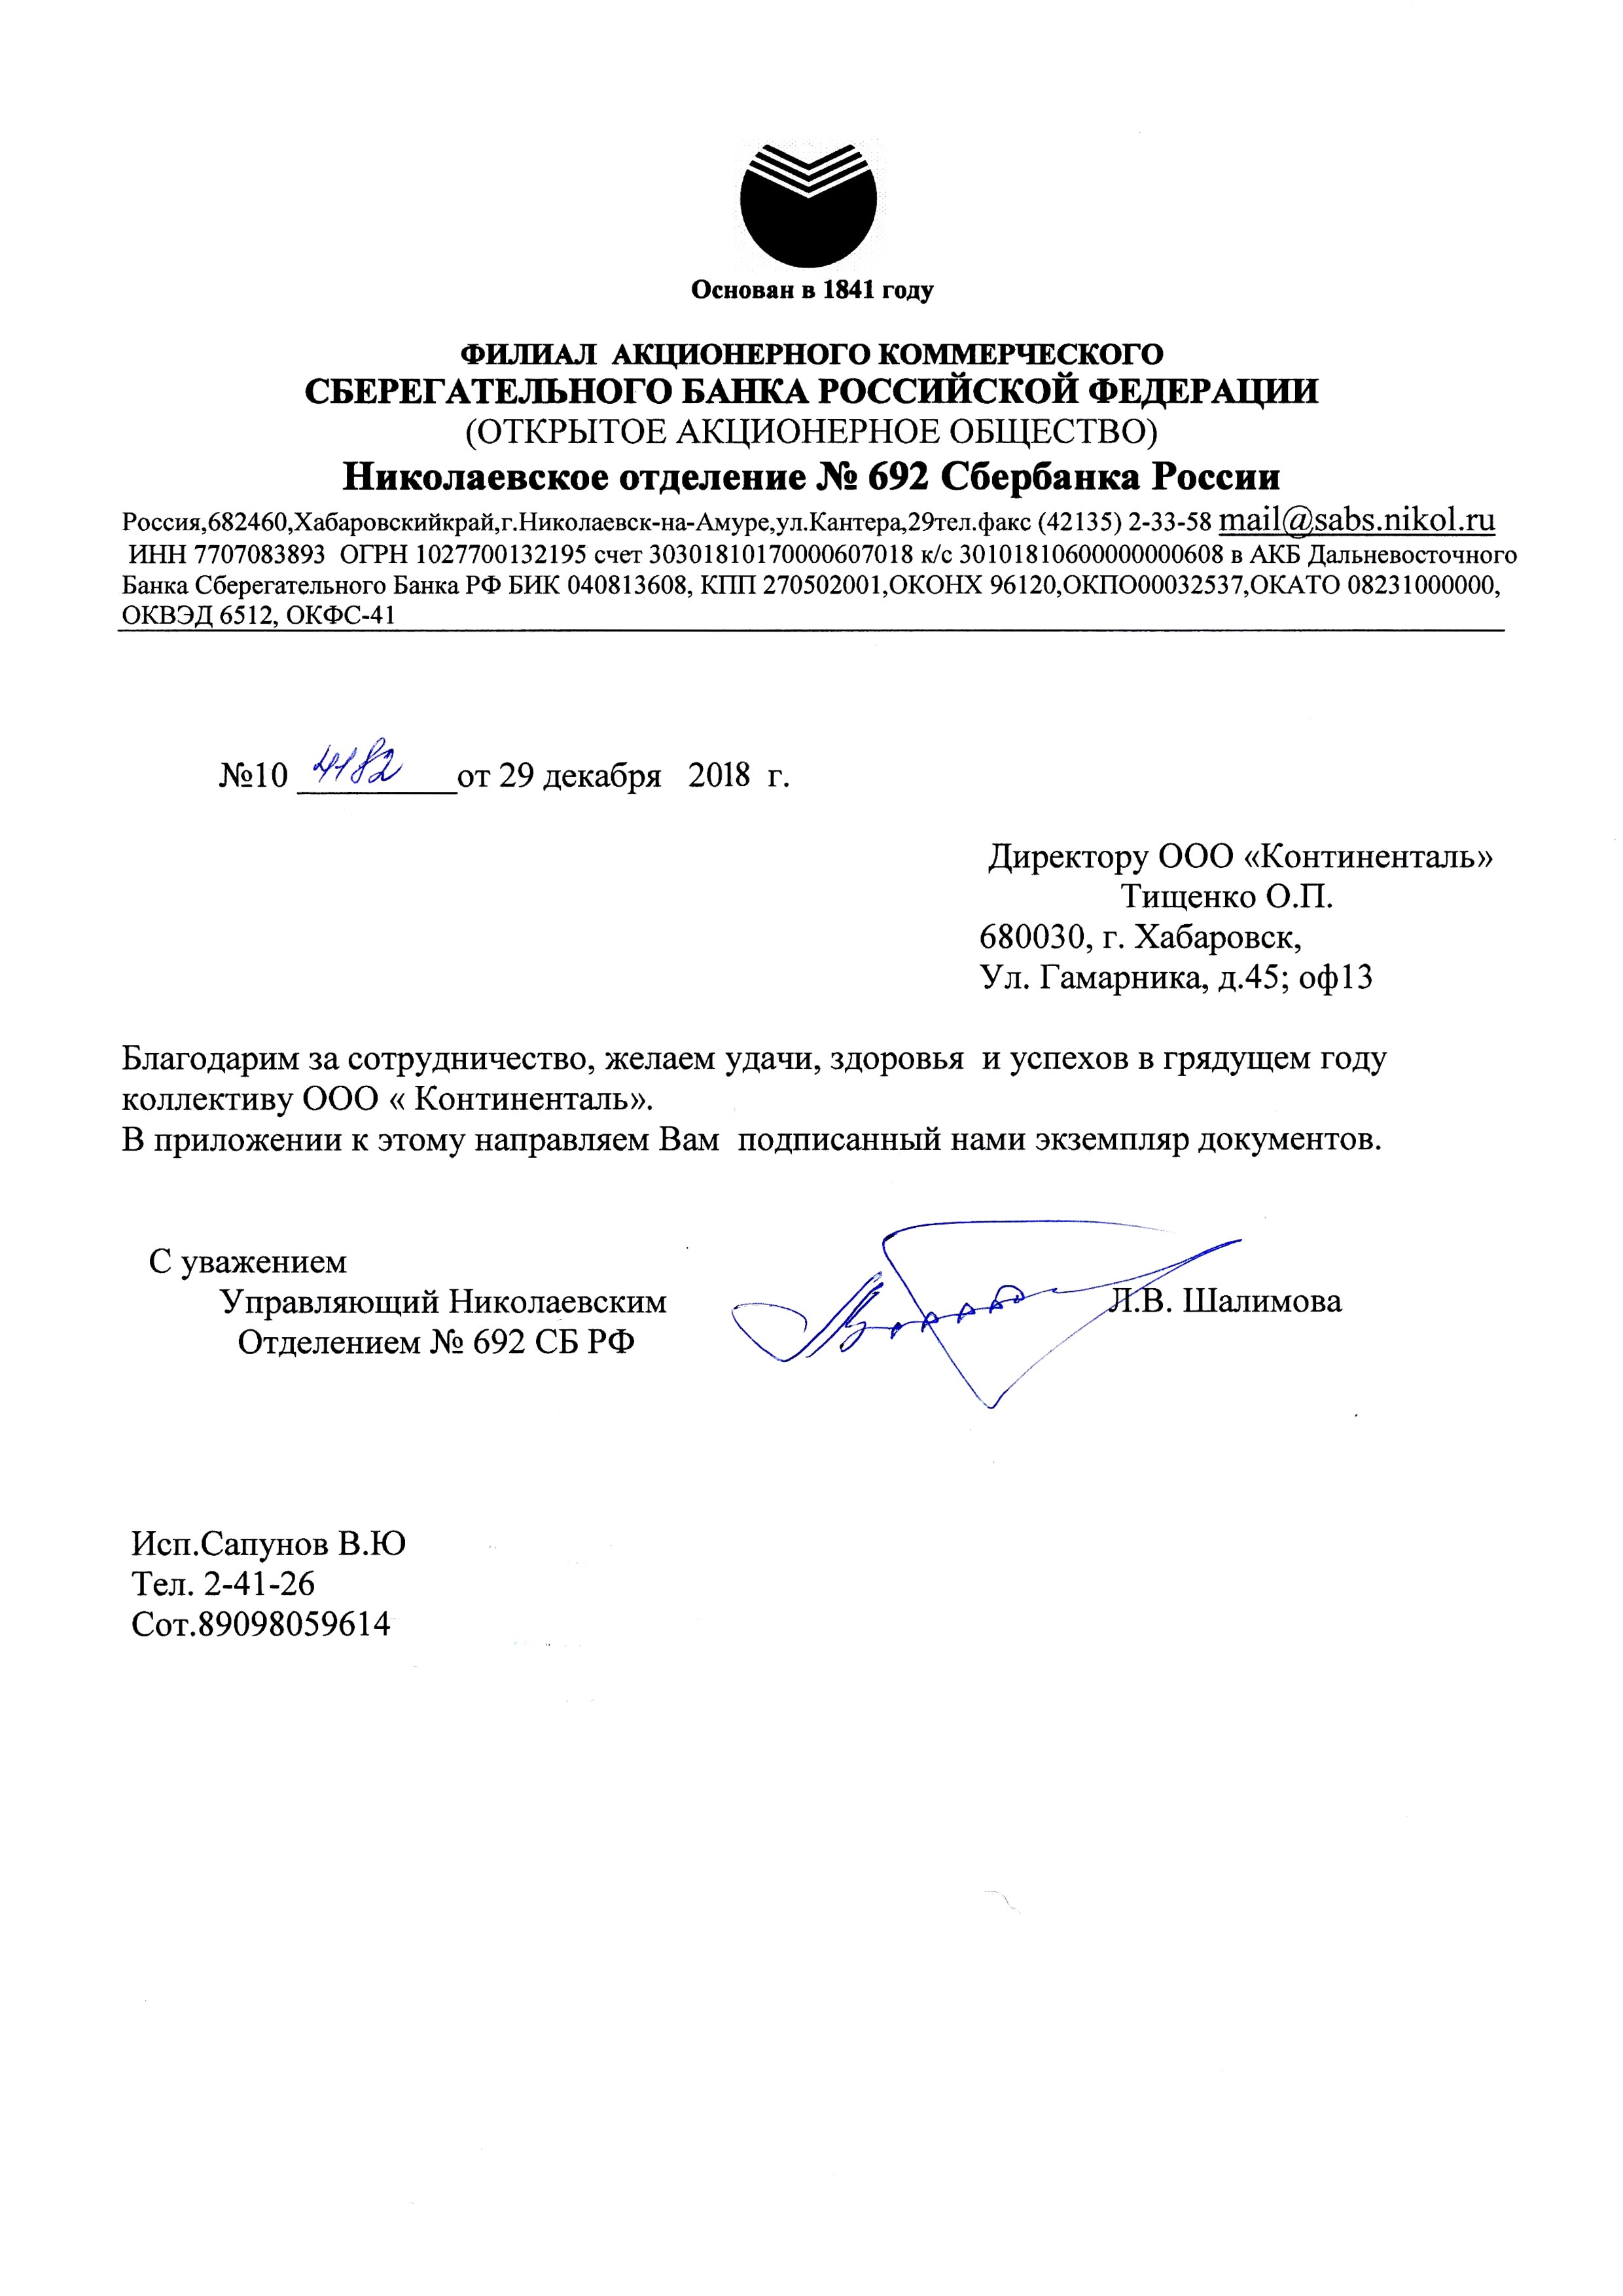 Николаевское отделение Сбербанка России благодарит за сотрудничество в организации рабочих мест